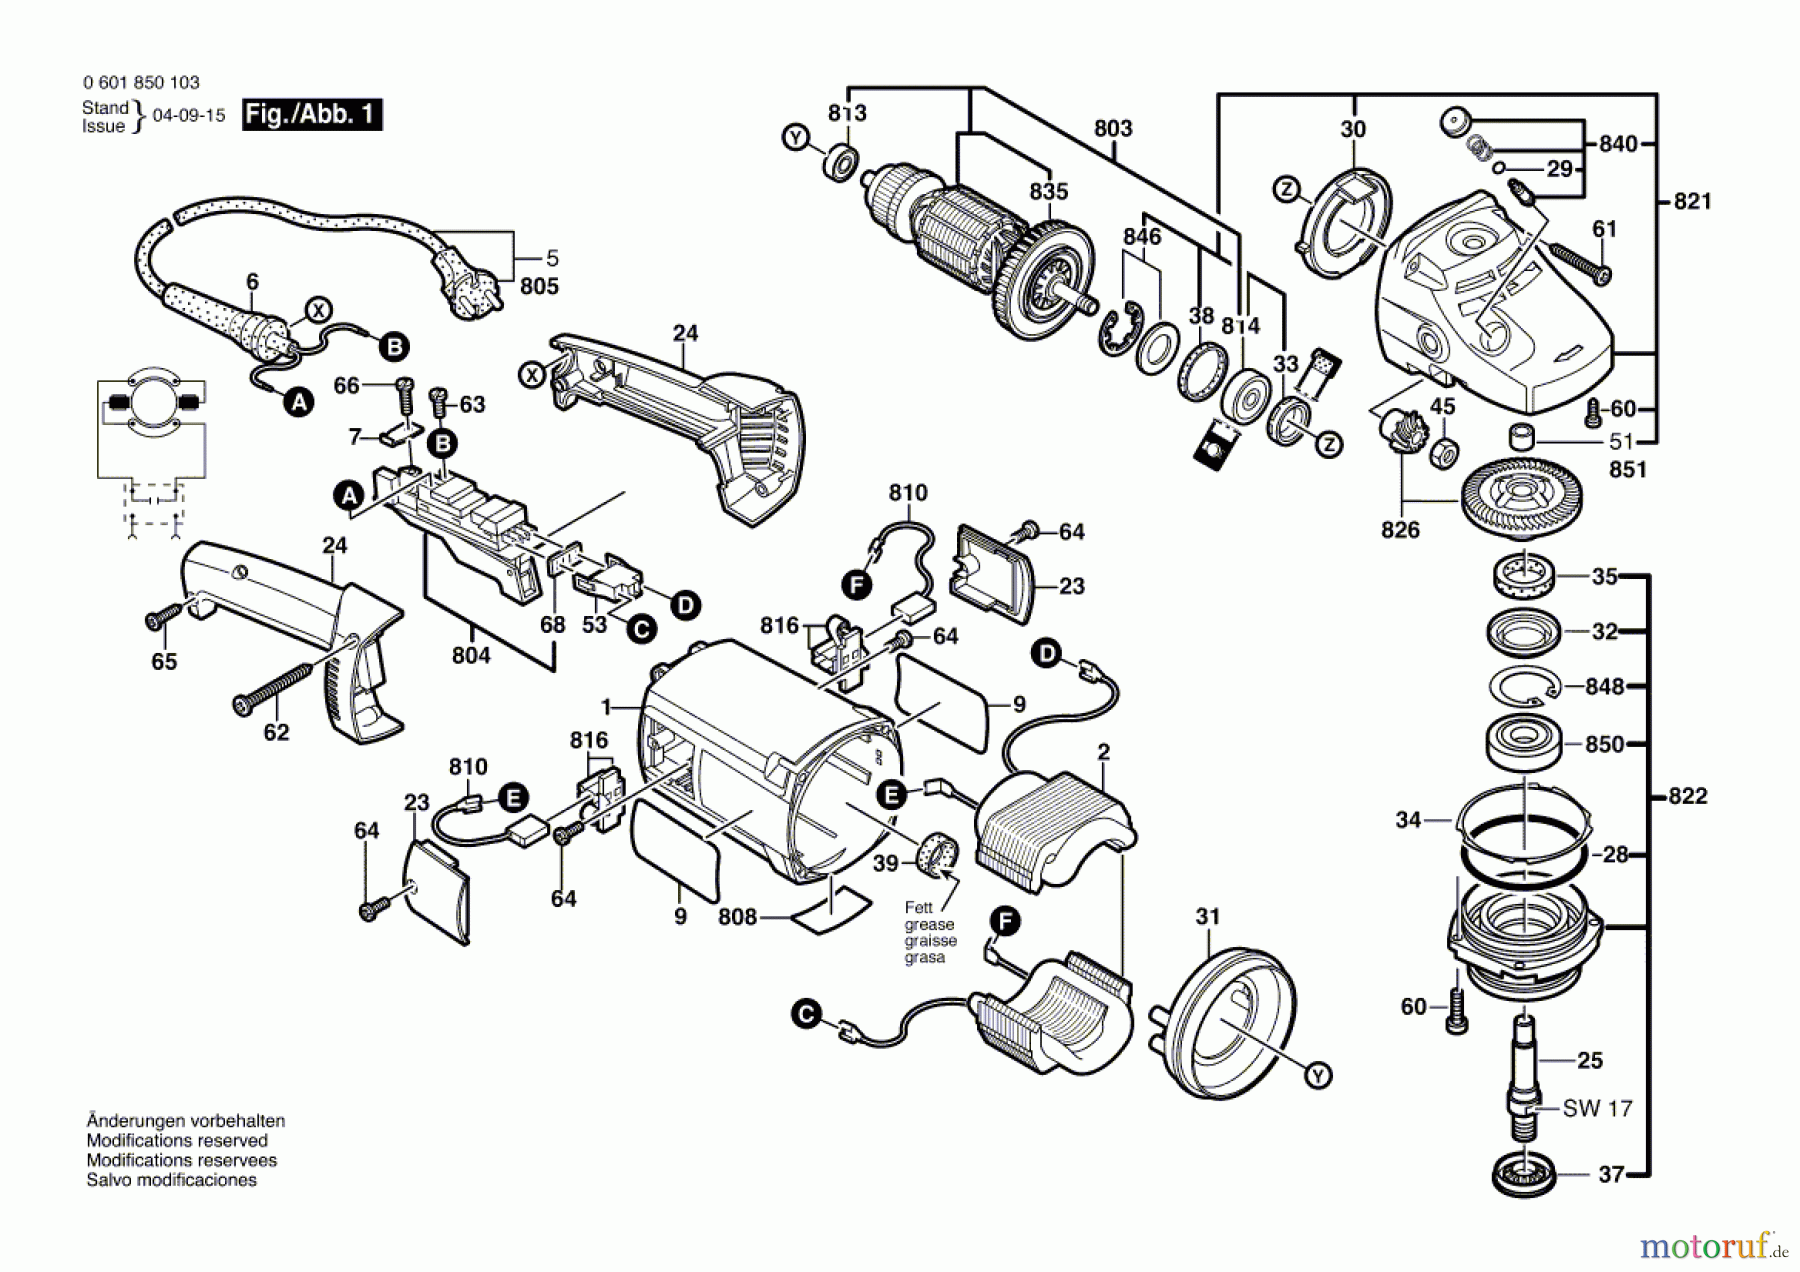  Bosch Werkzeug Winkelschleifer GWS 20-230 H Seite 1